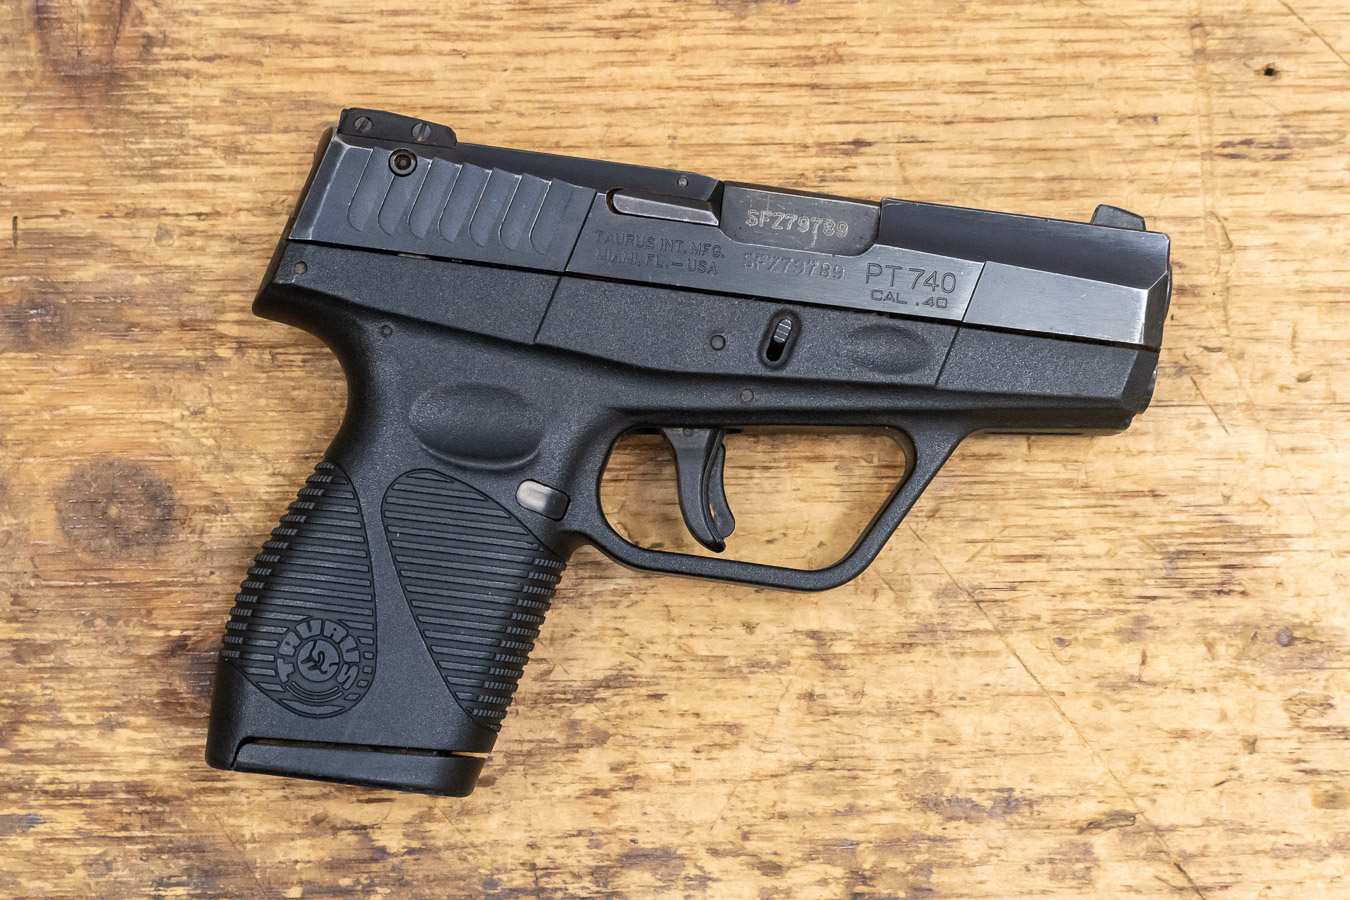 taurus-pt740-slim-40-s-w-used-police-trade-in-pistol-sportsman-s